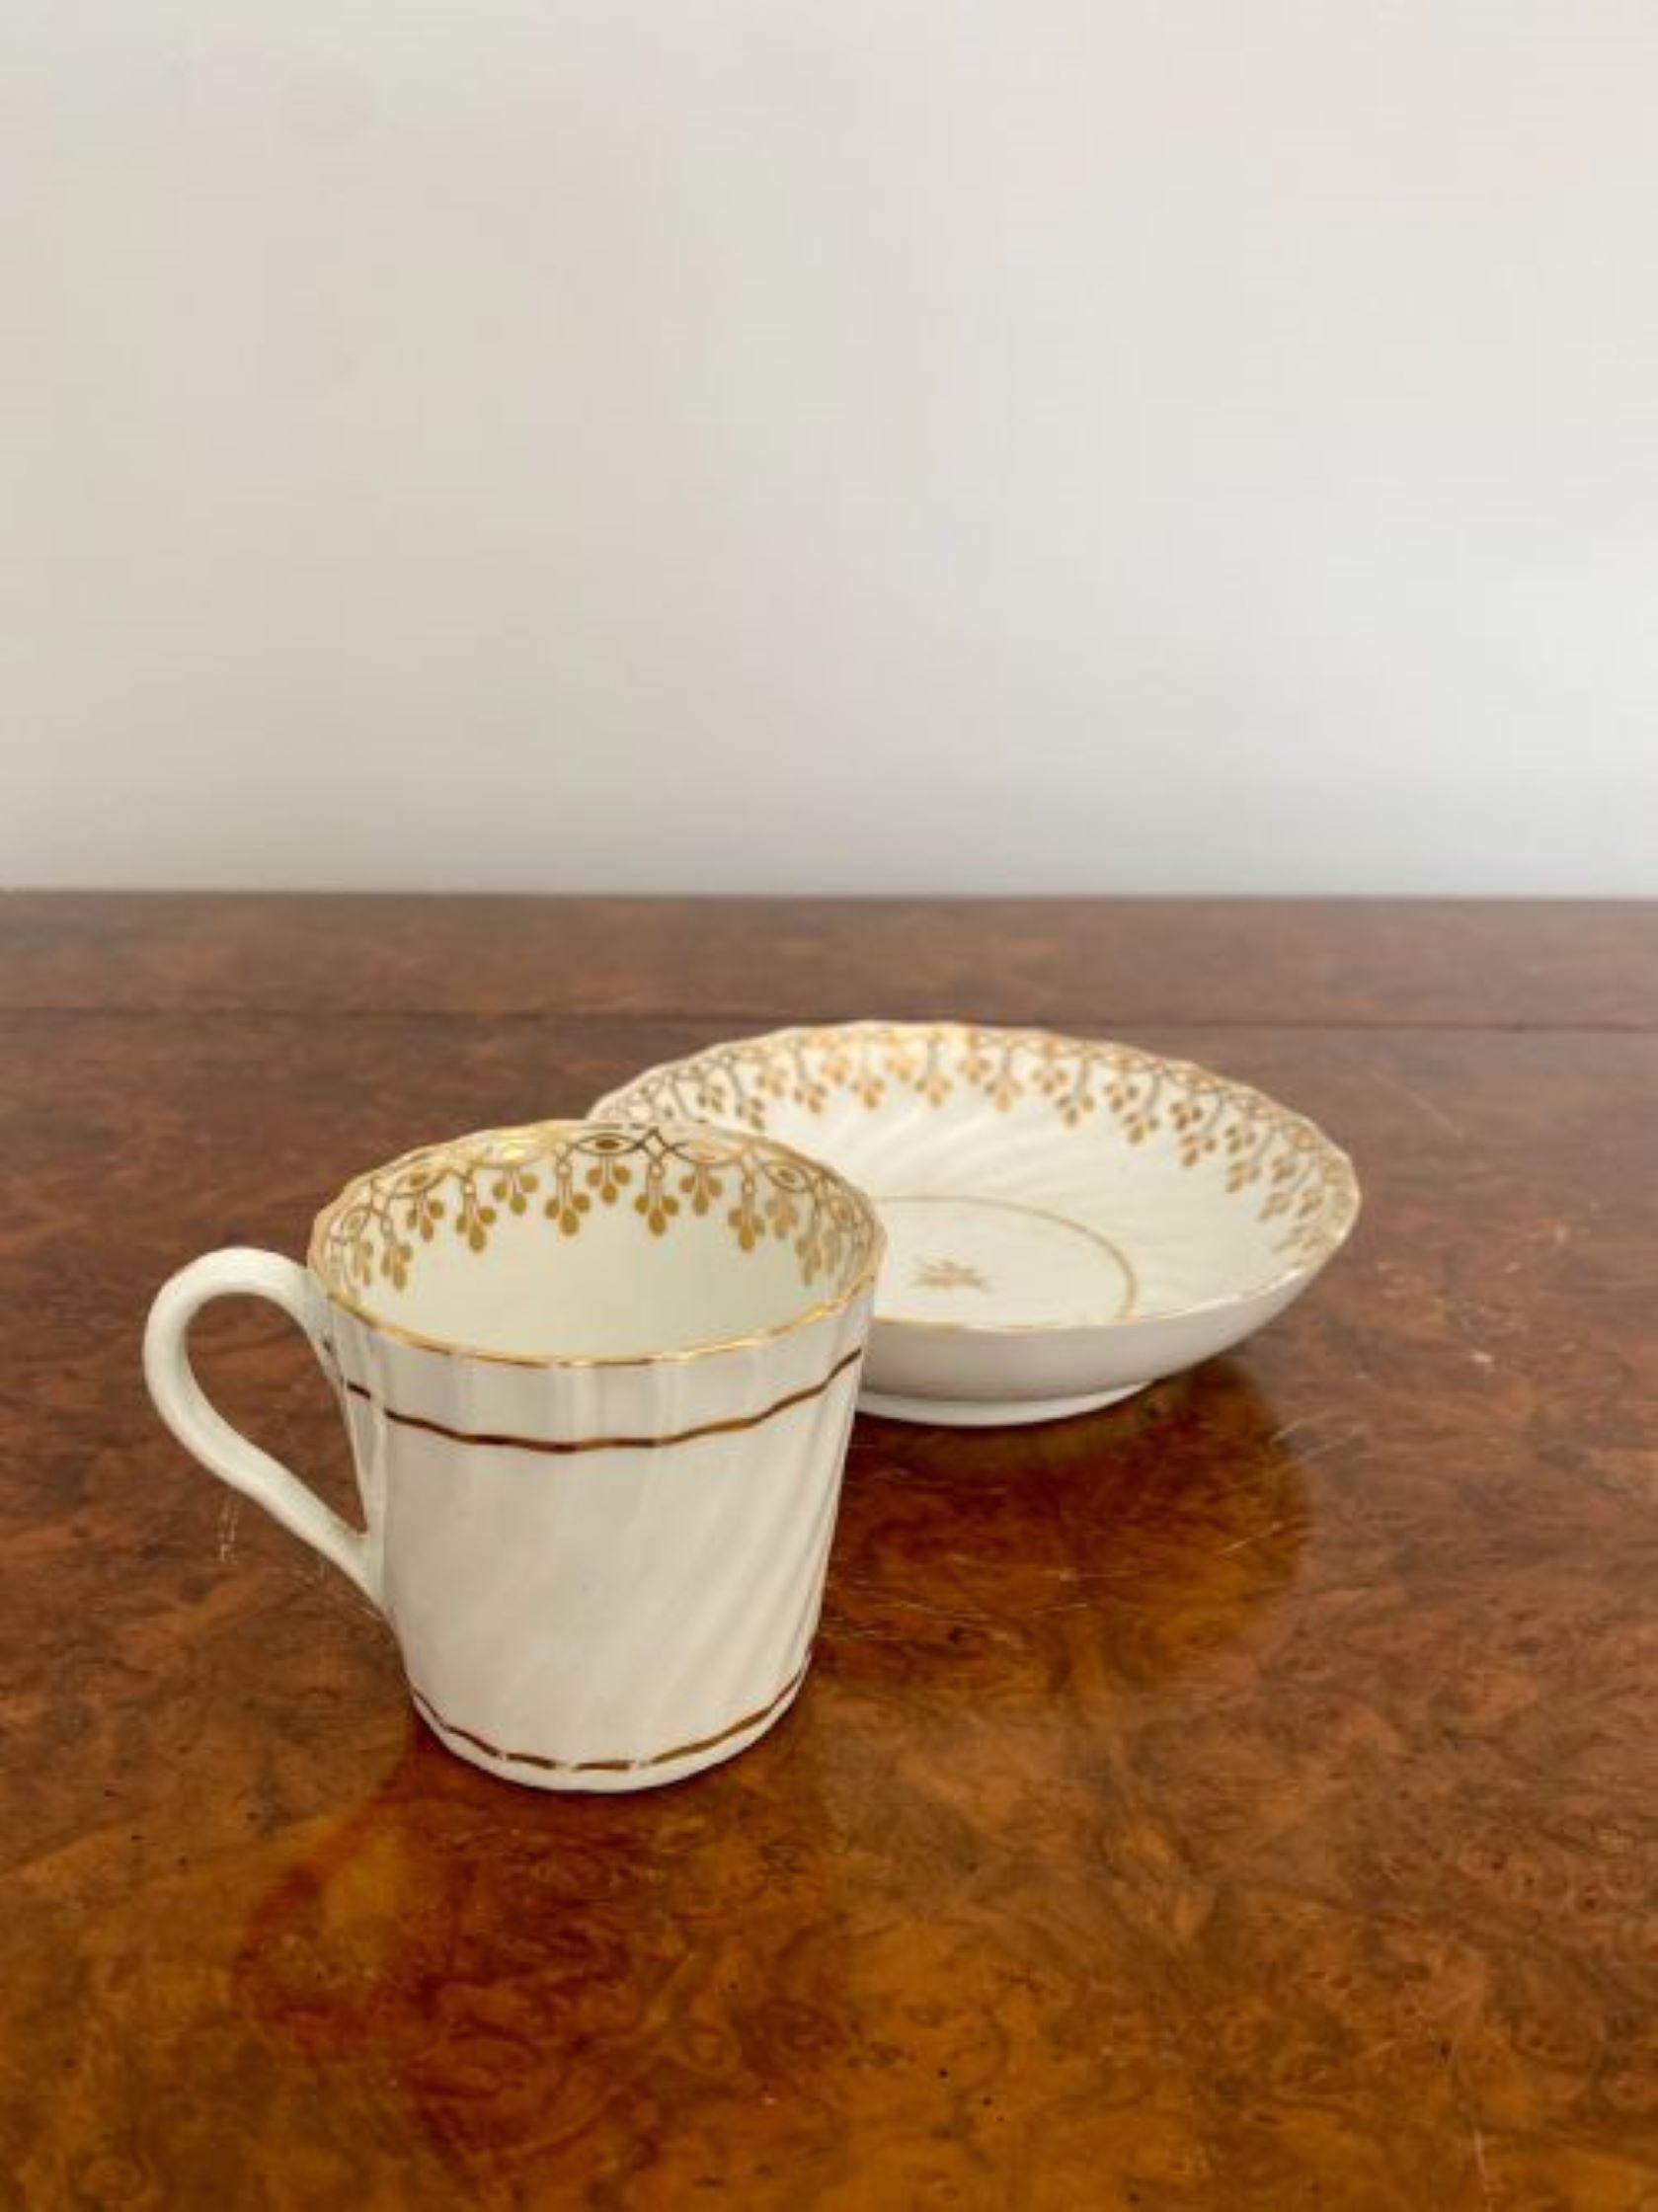 Qualität Paar 19. Jahrhundert Teetassen und Untertassen.
Hochwertiges Paar antiker Teetassen und Untertassen in Wellenform mit vergoldetem Dekor. 